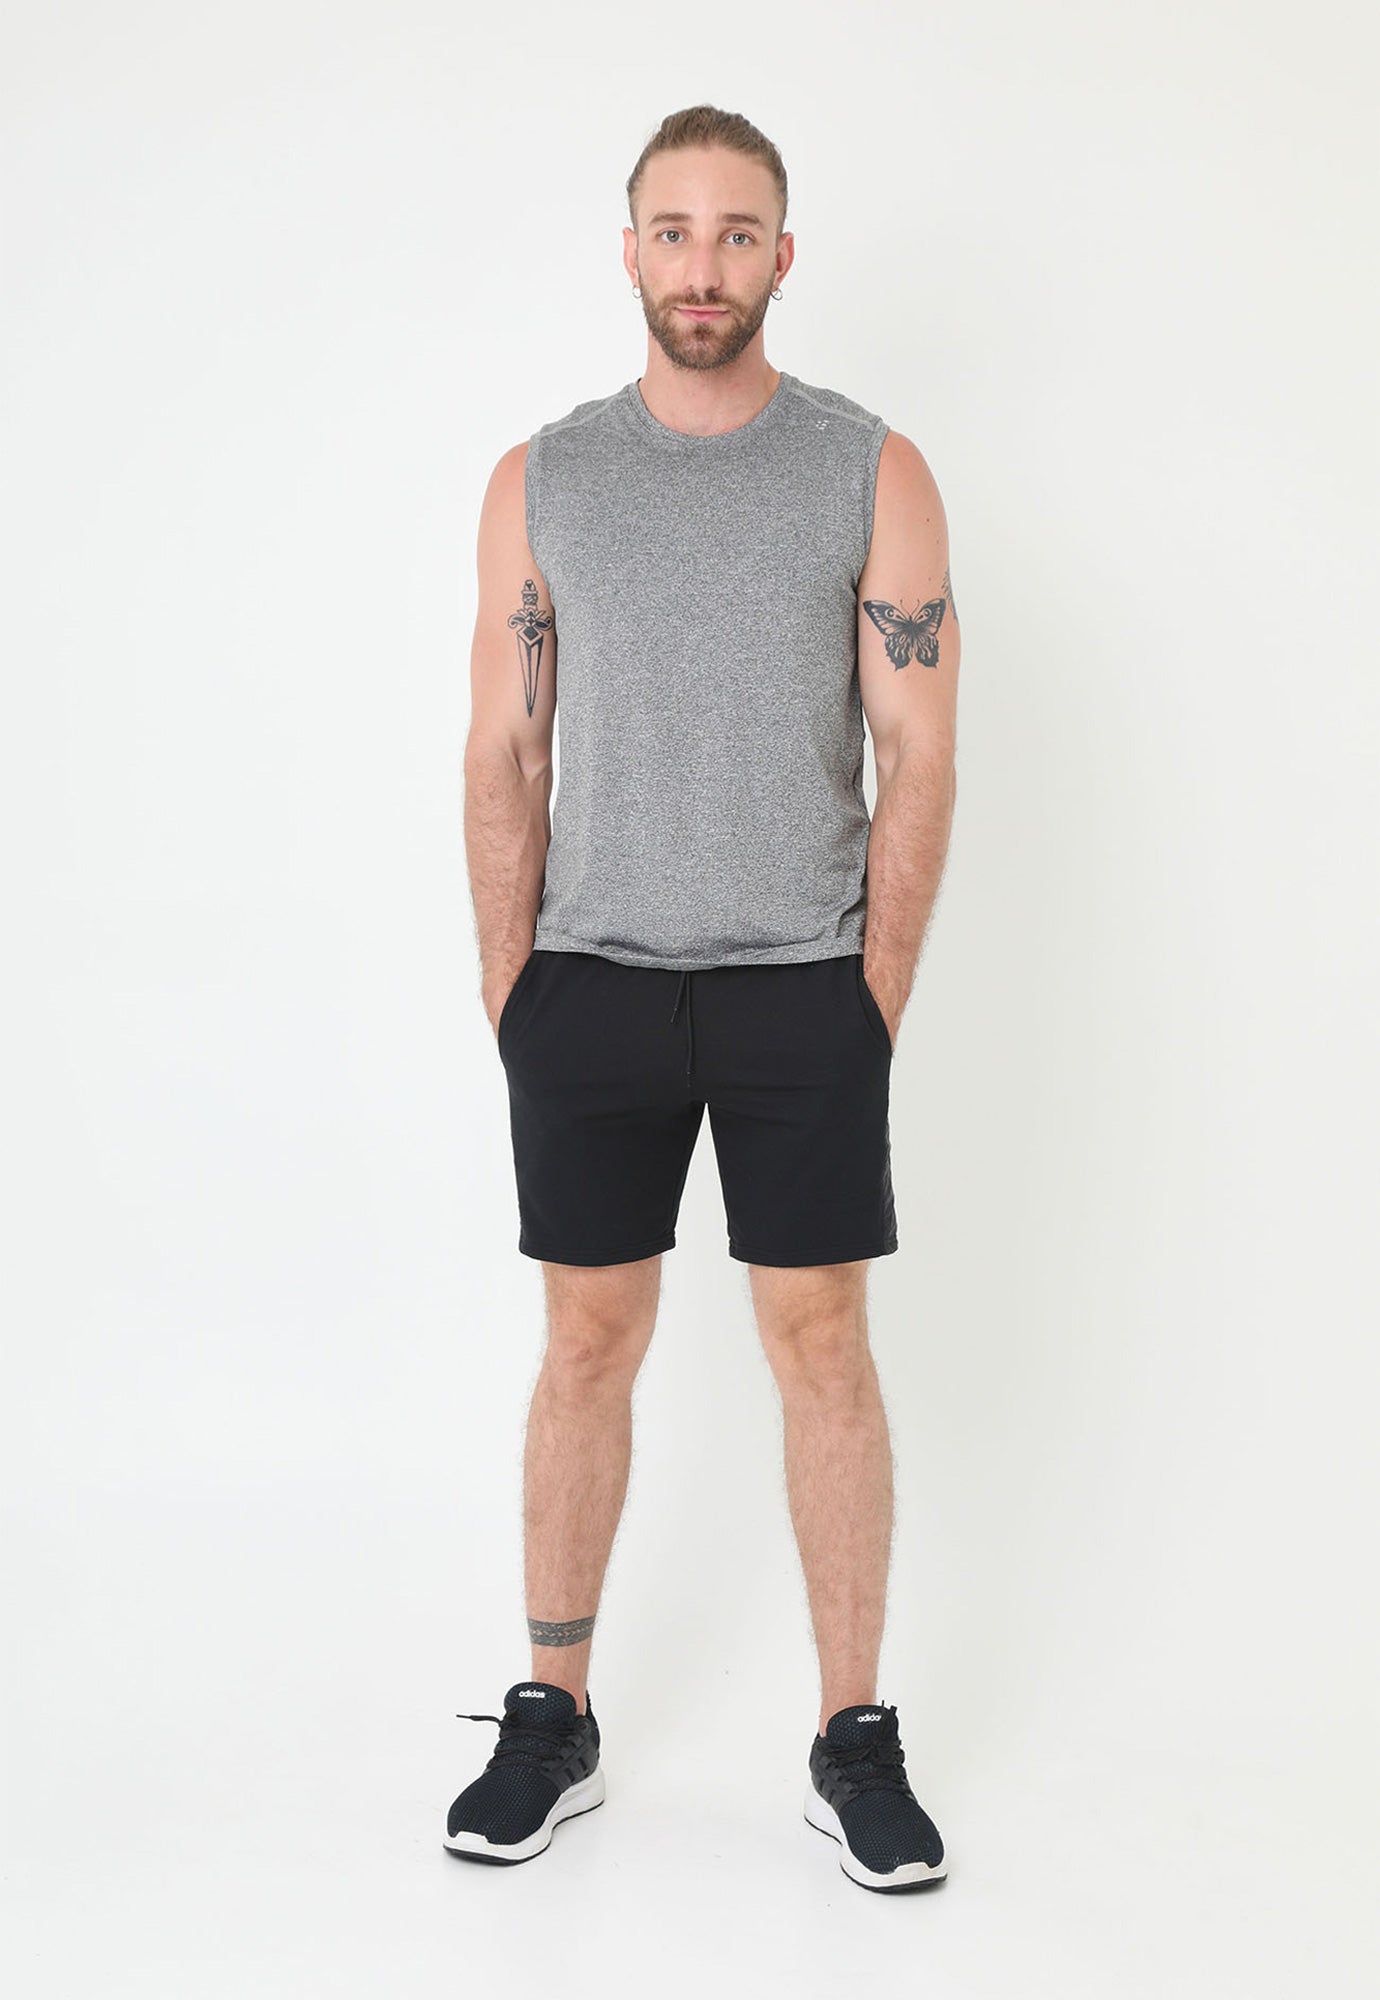 Bermuda negra en burda, fondo entero, cordón ajustable y bolsillos laterales para hombre